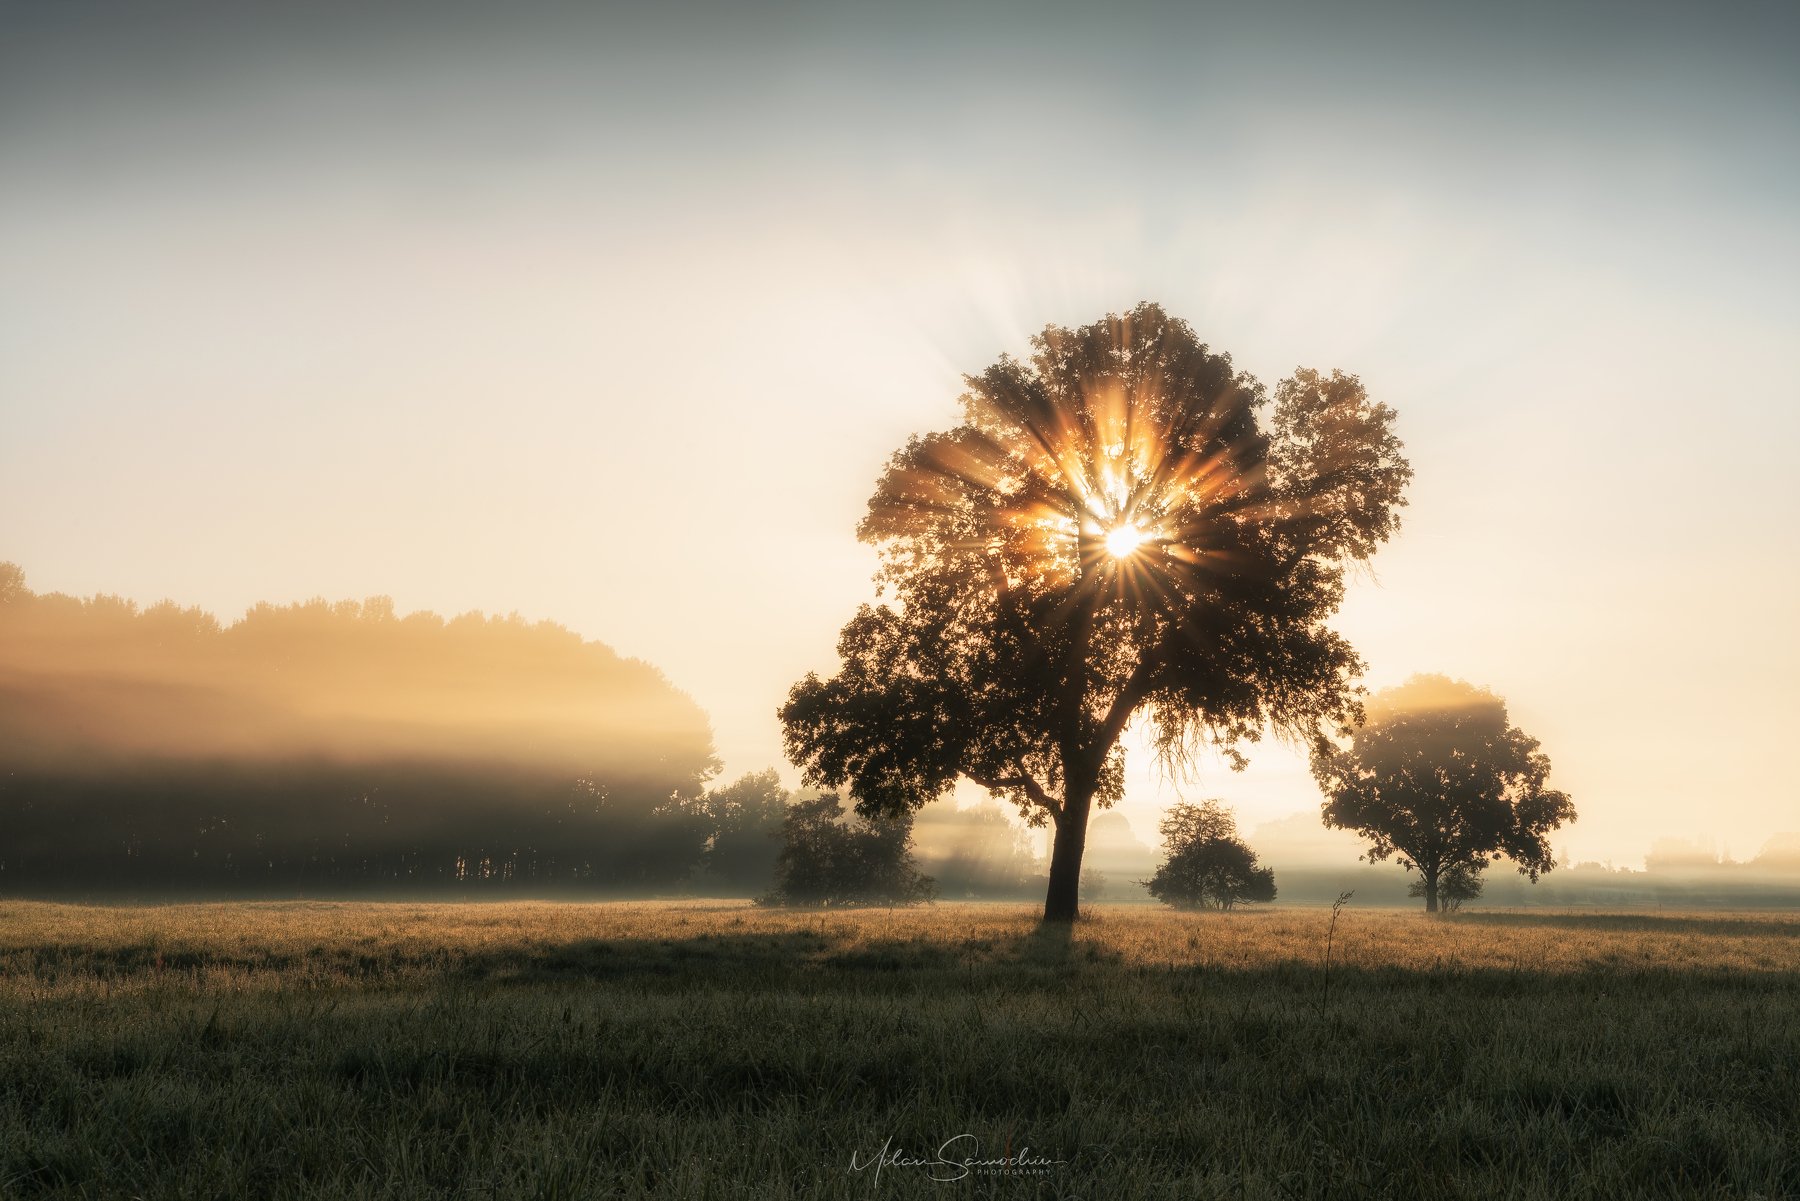 Fog, morning, tree, beams, light, Milan Samochin